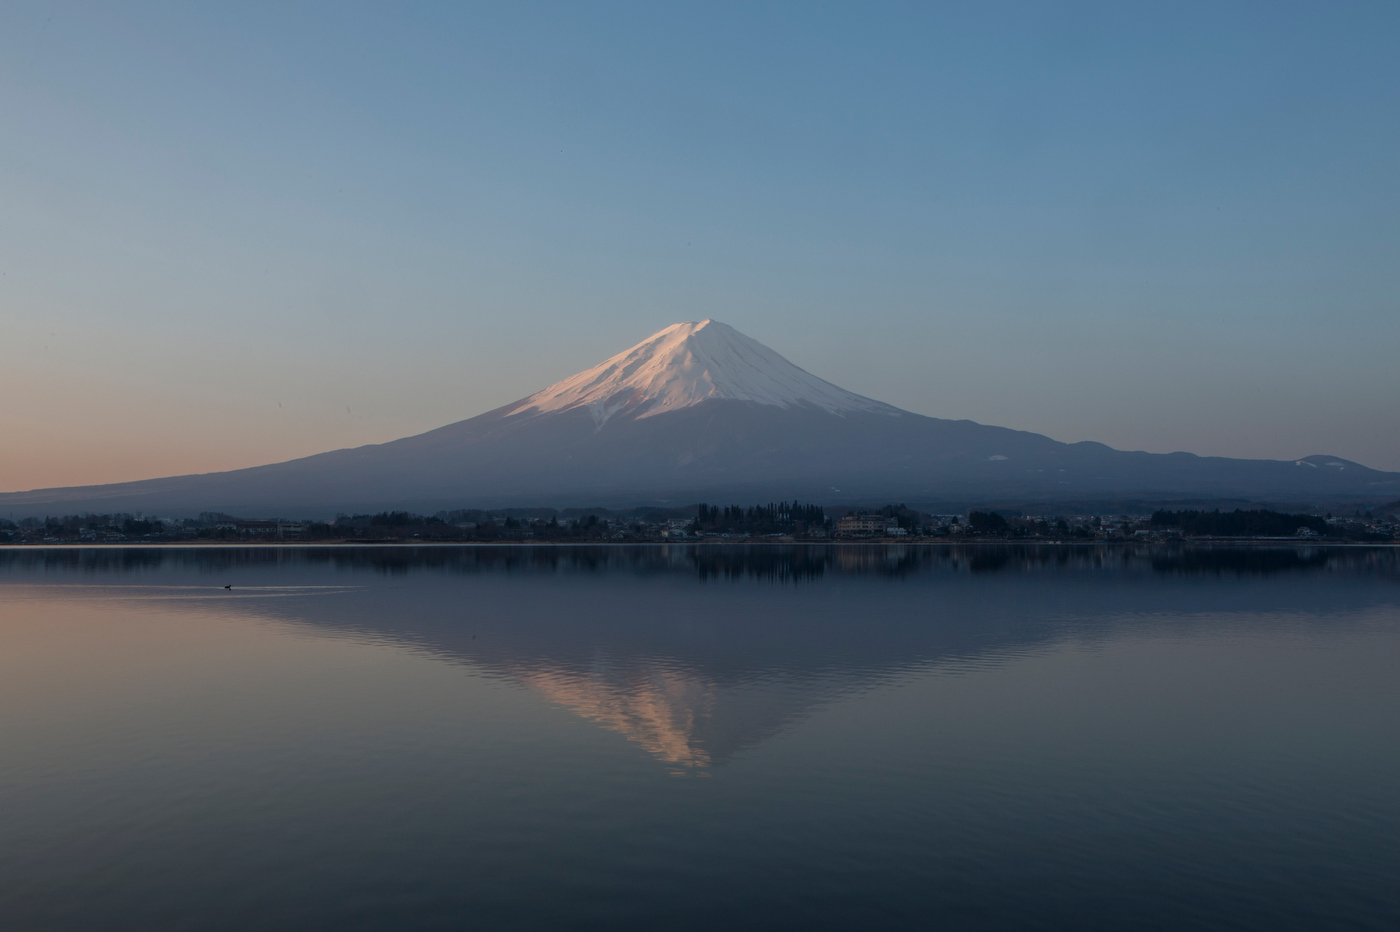 Mt. Fuji, Japan.